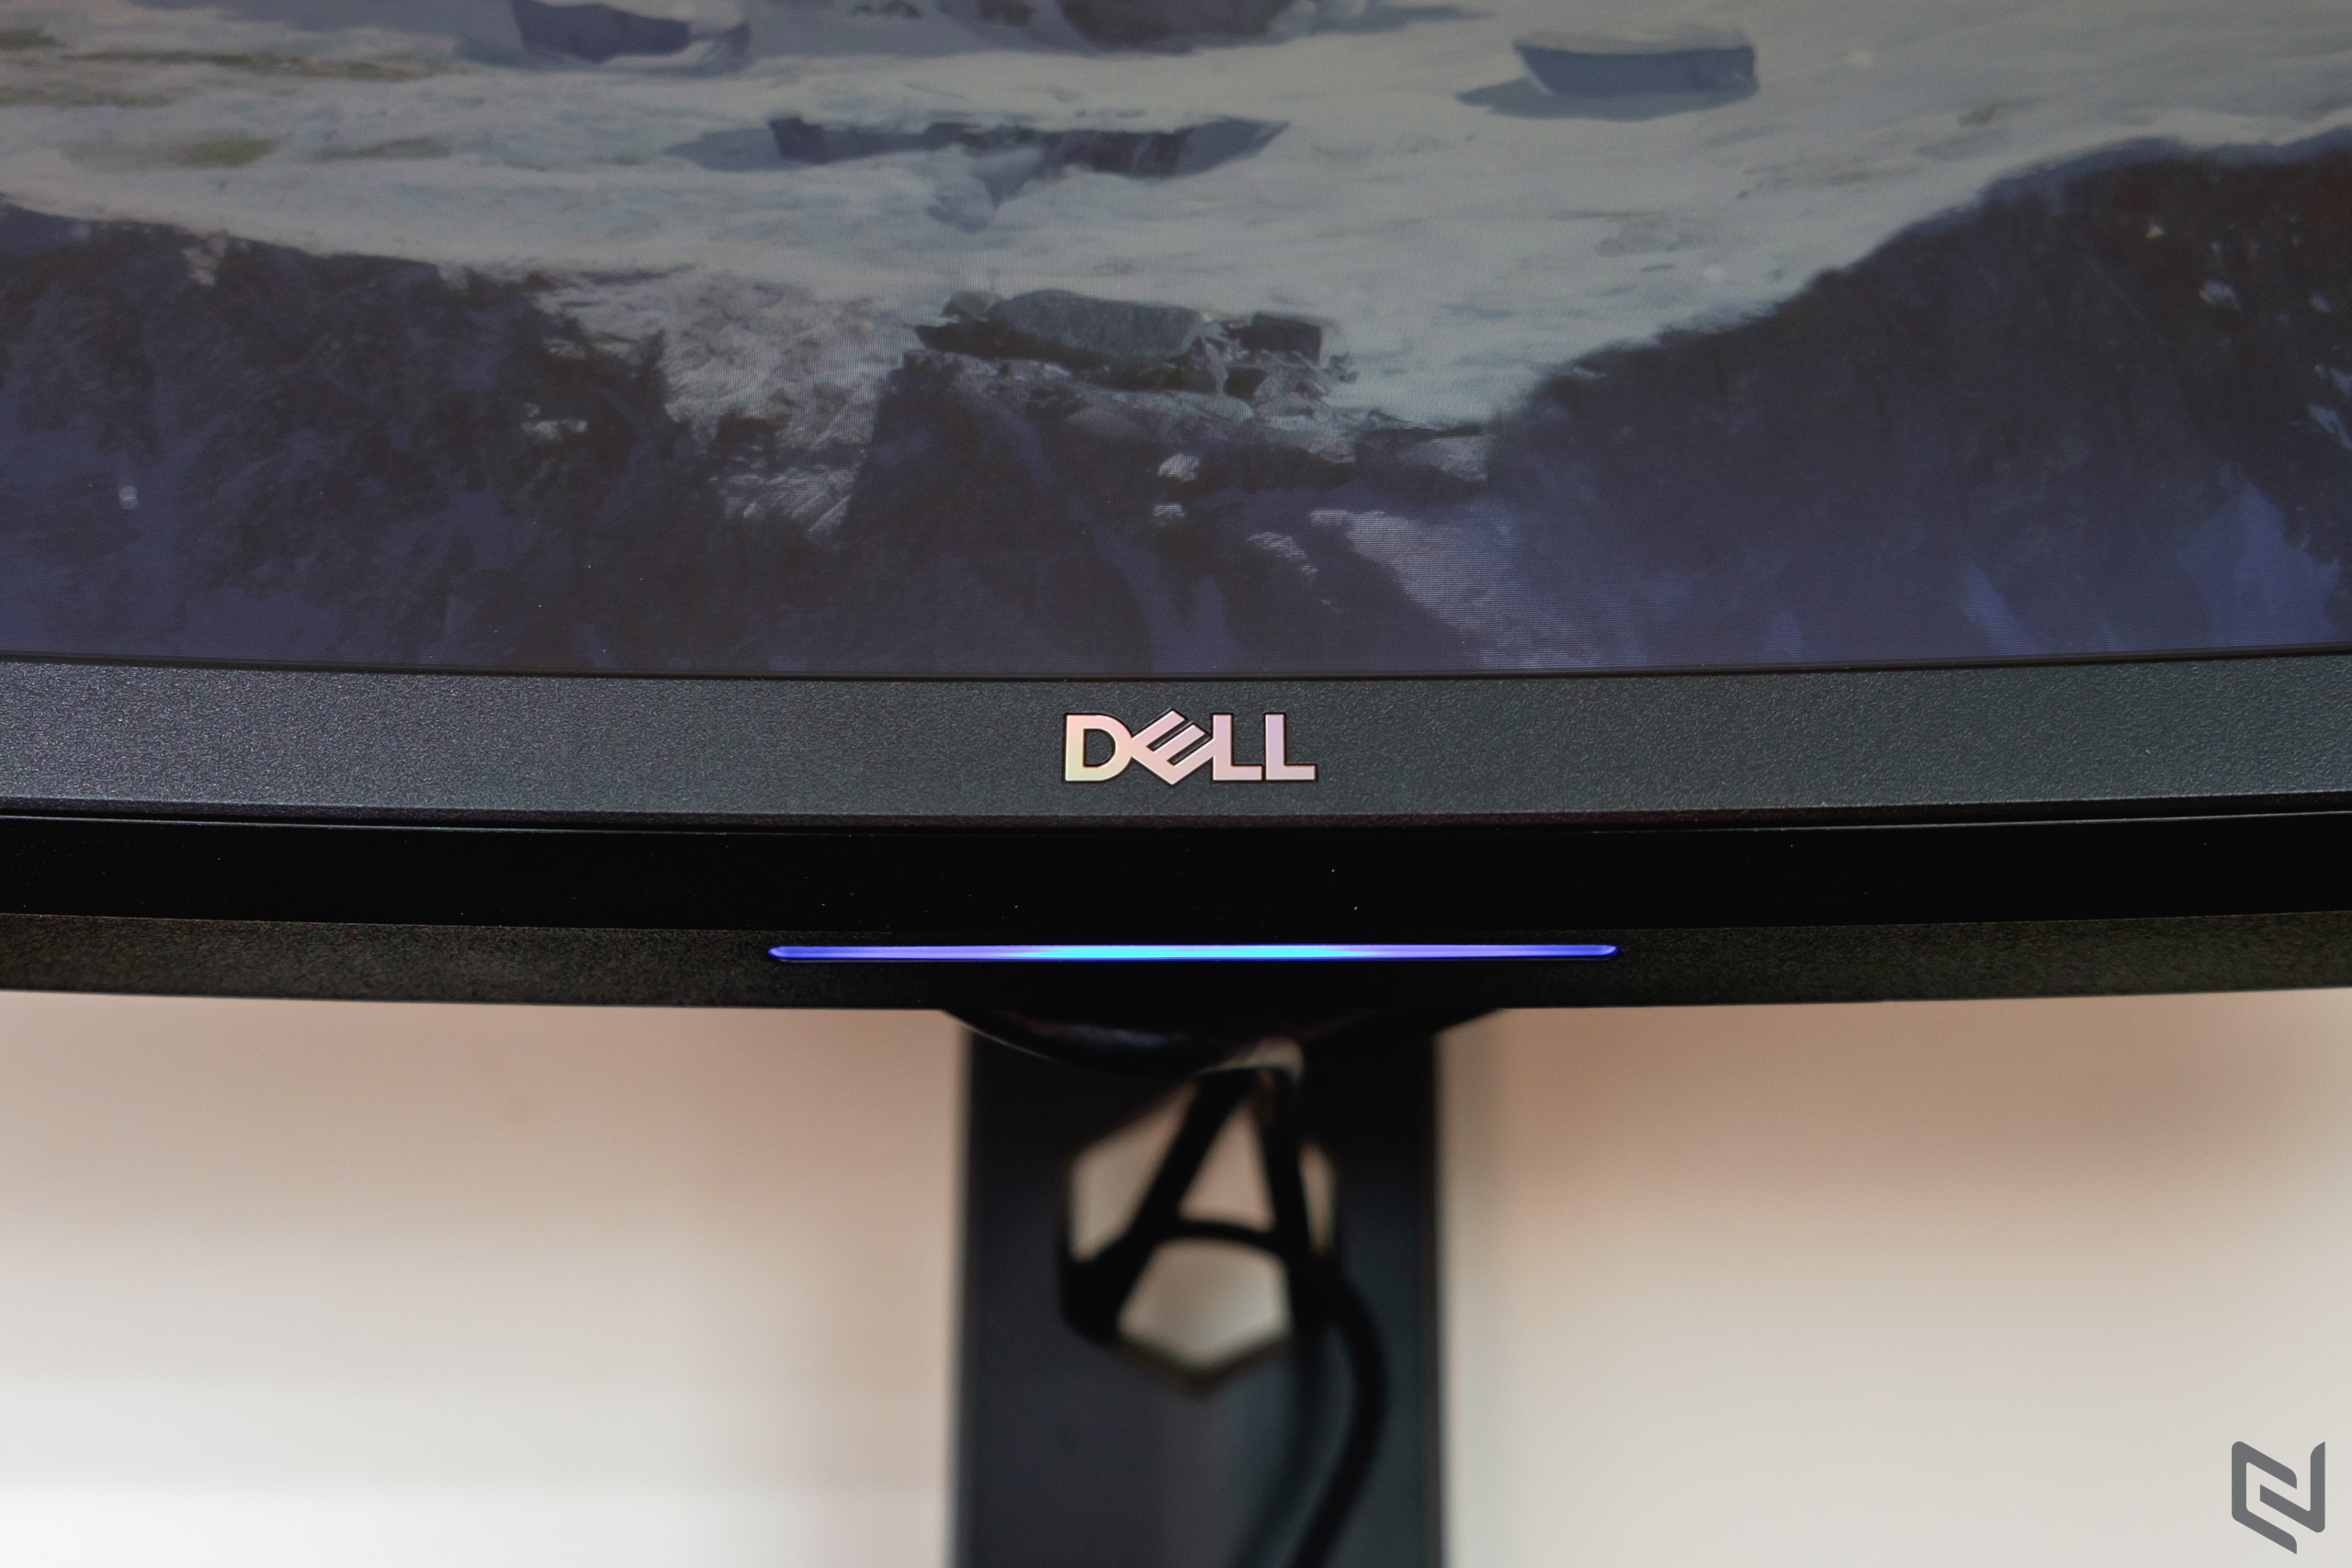 Đánh giá màn hình cong chơi game Dell S2722DGM: Cấu hình trong mơ với kích cỡ 27-inch, độ phân giải 2K và tần số 165Hz